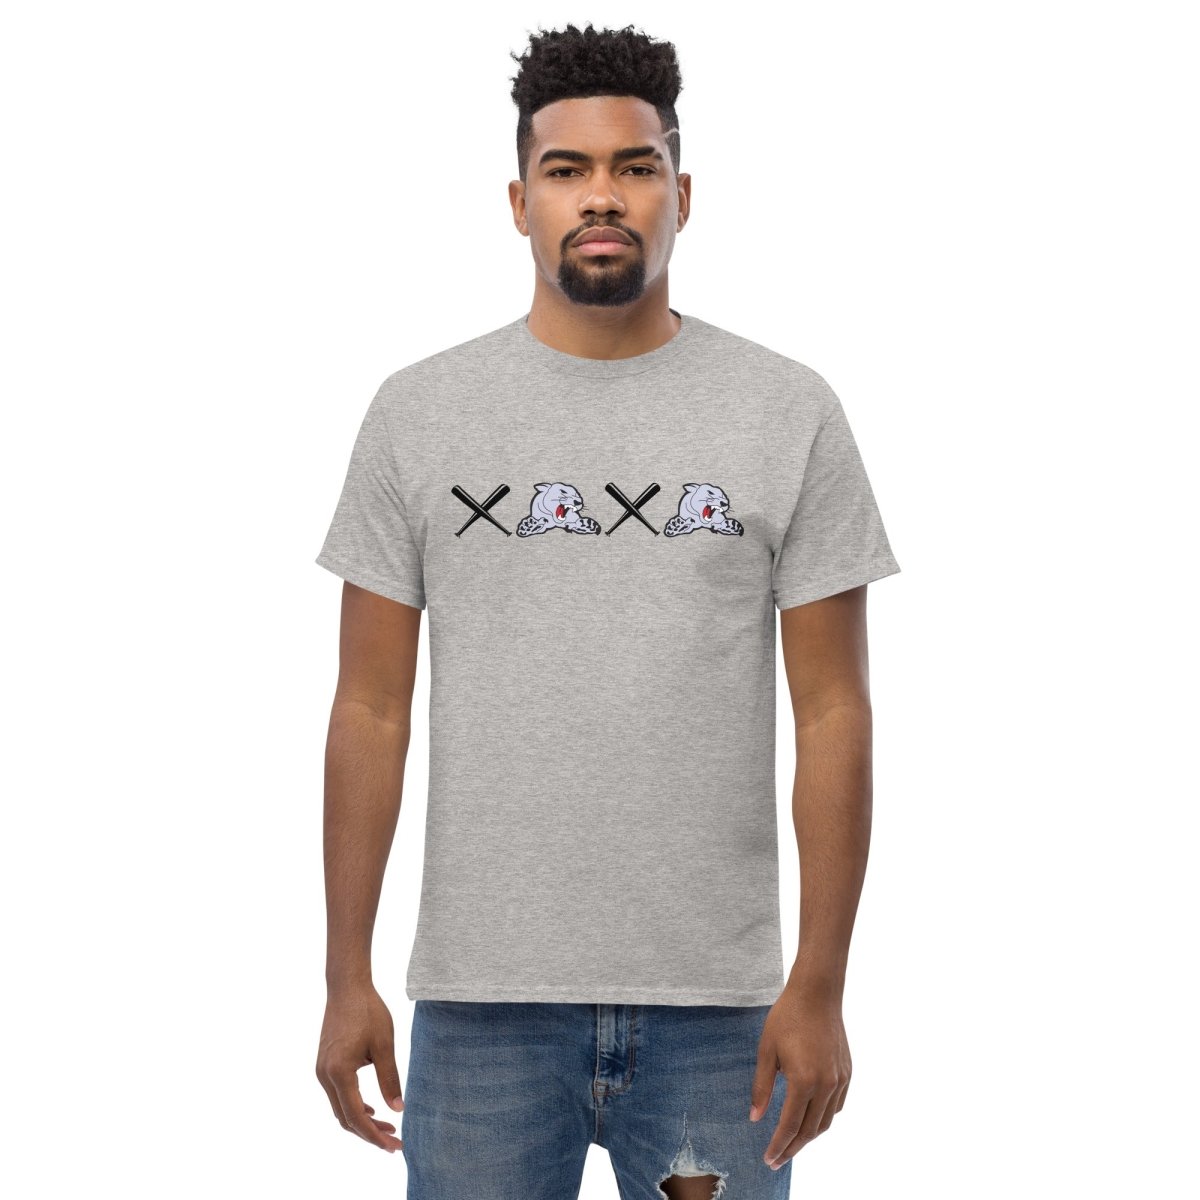 XOXO Classic T-shirt